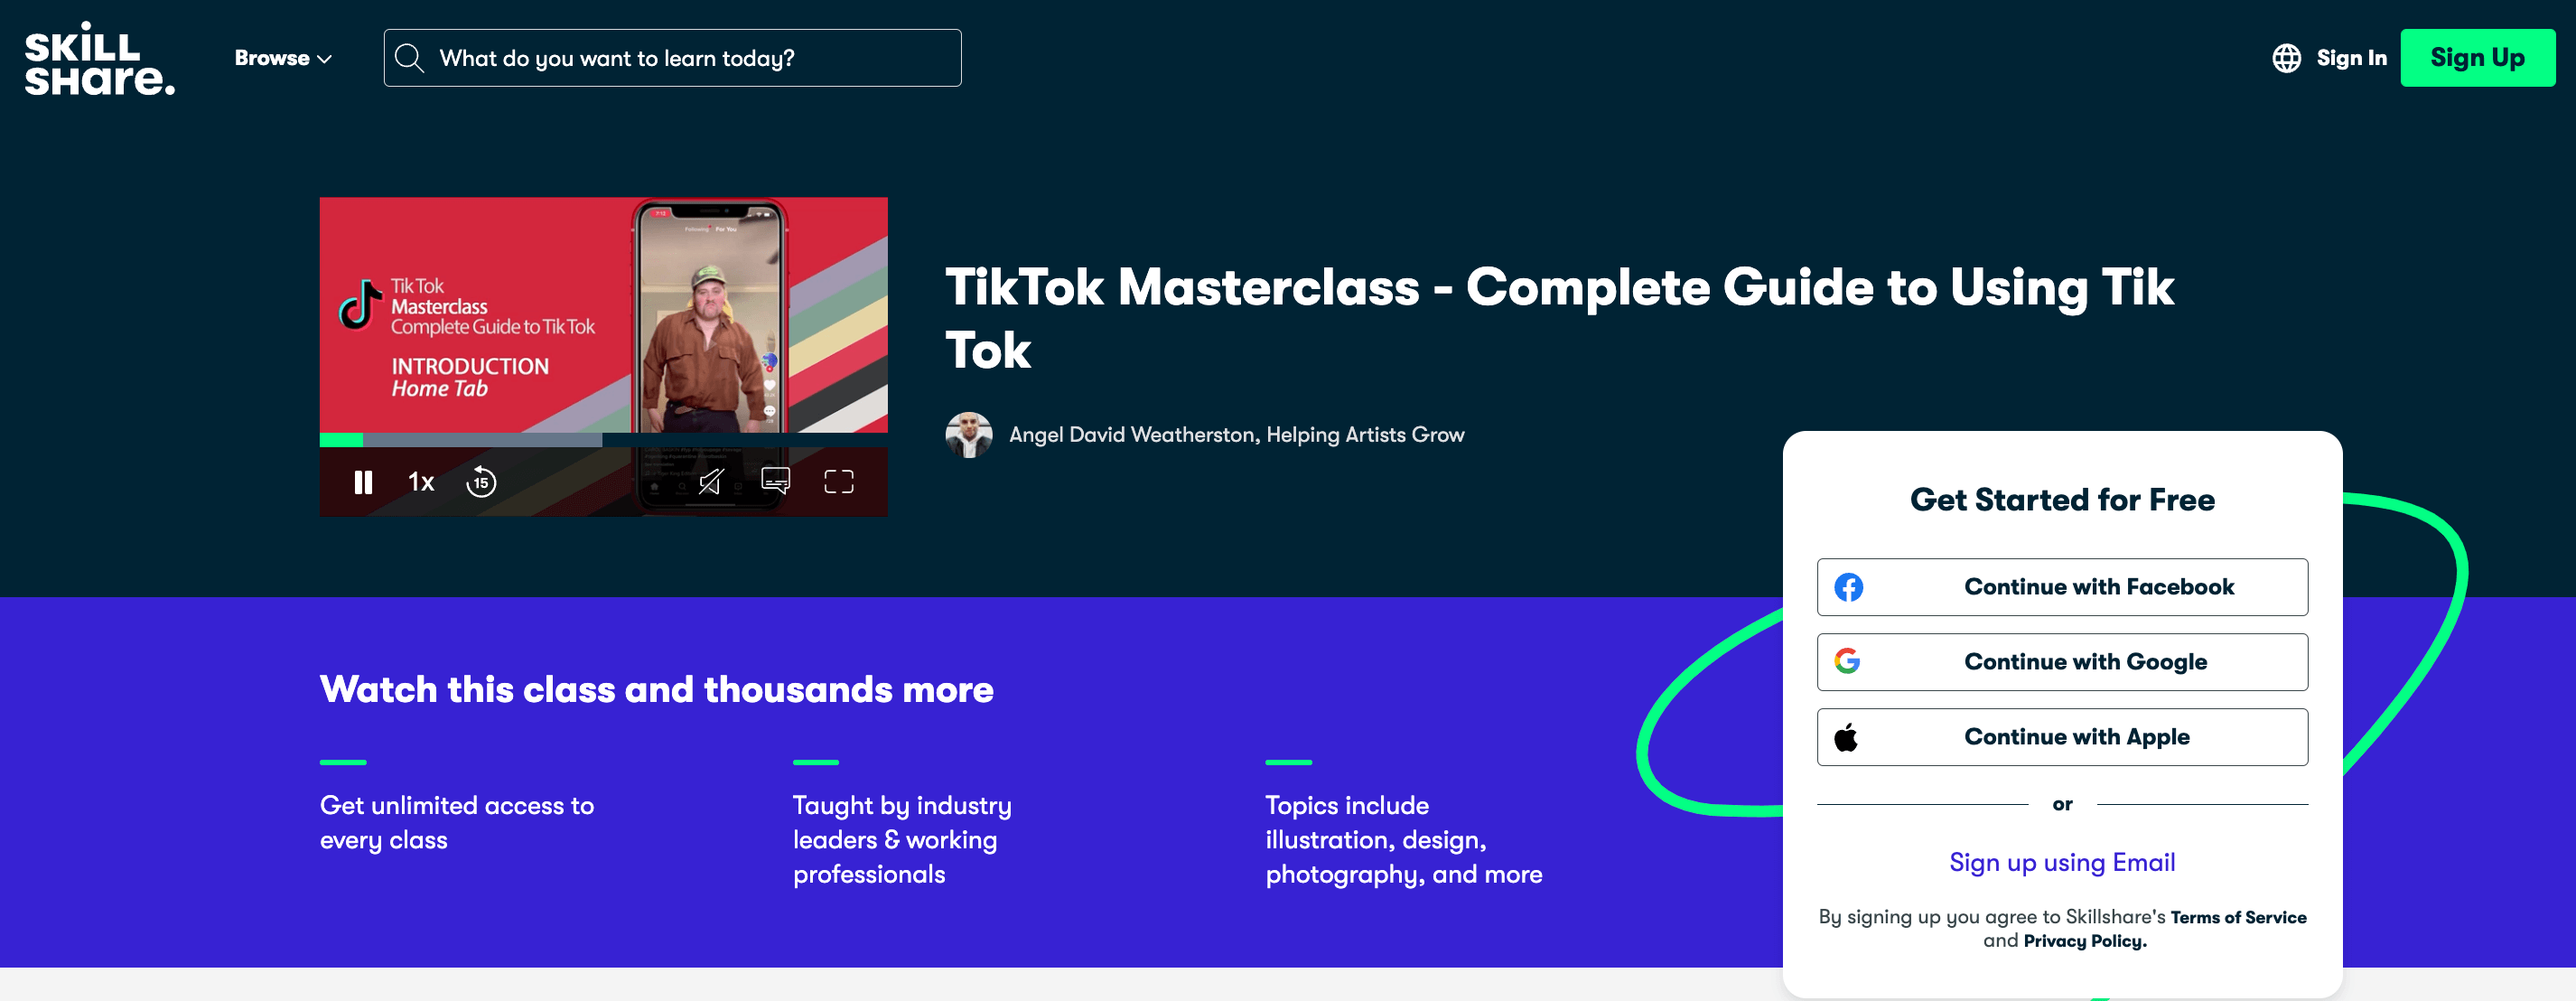 Homepage of Skillshare's TikTok Masterclass